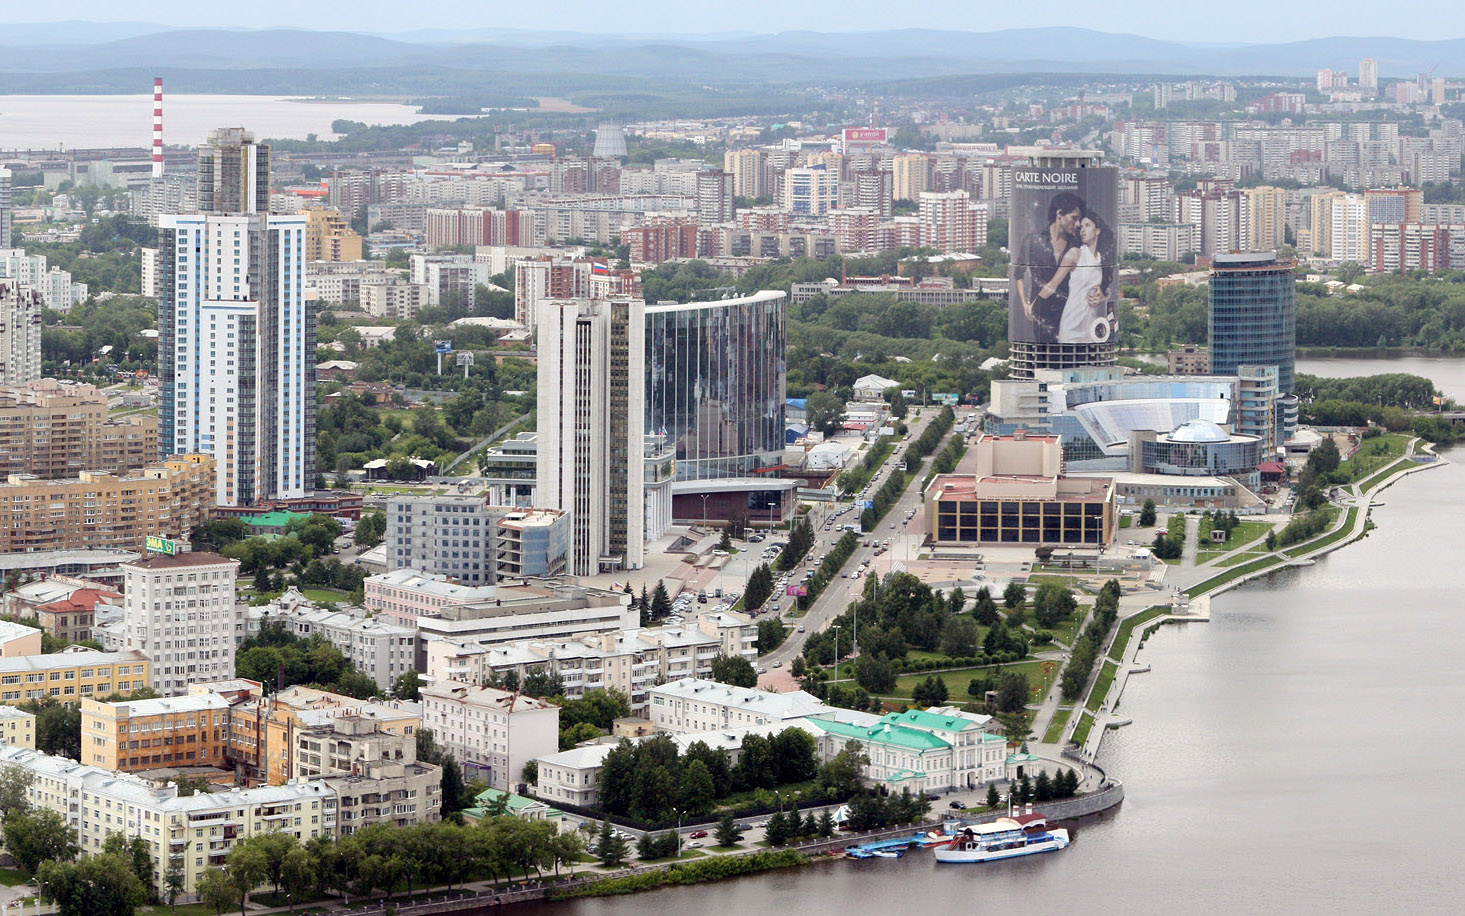 Консулството на България в Екатеринбург възстановява работа